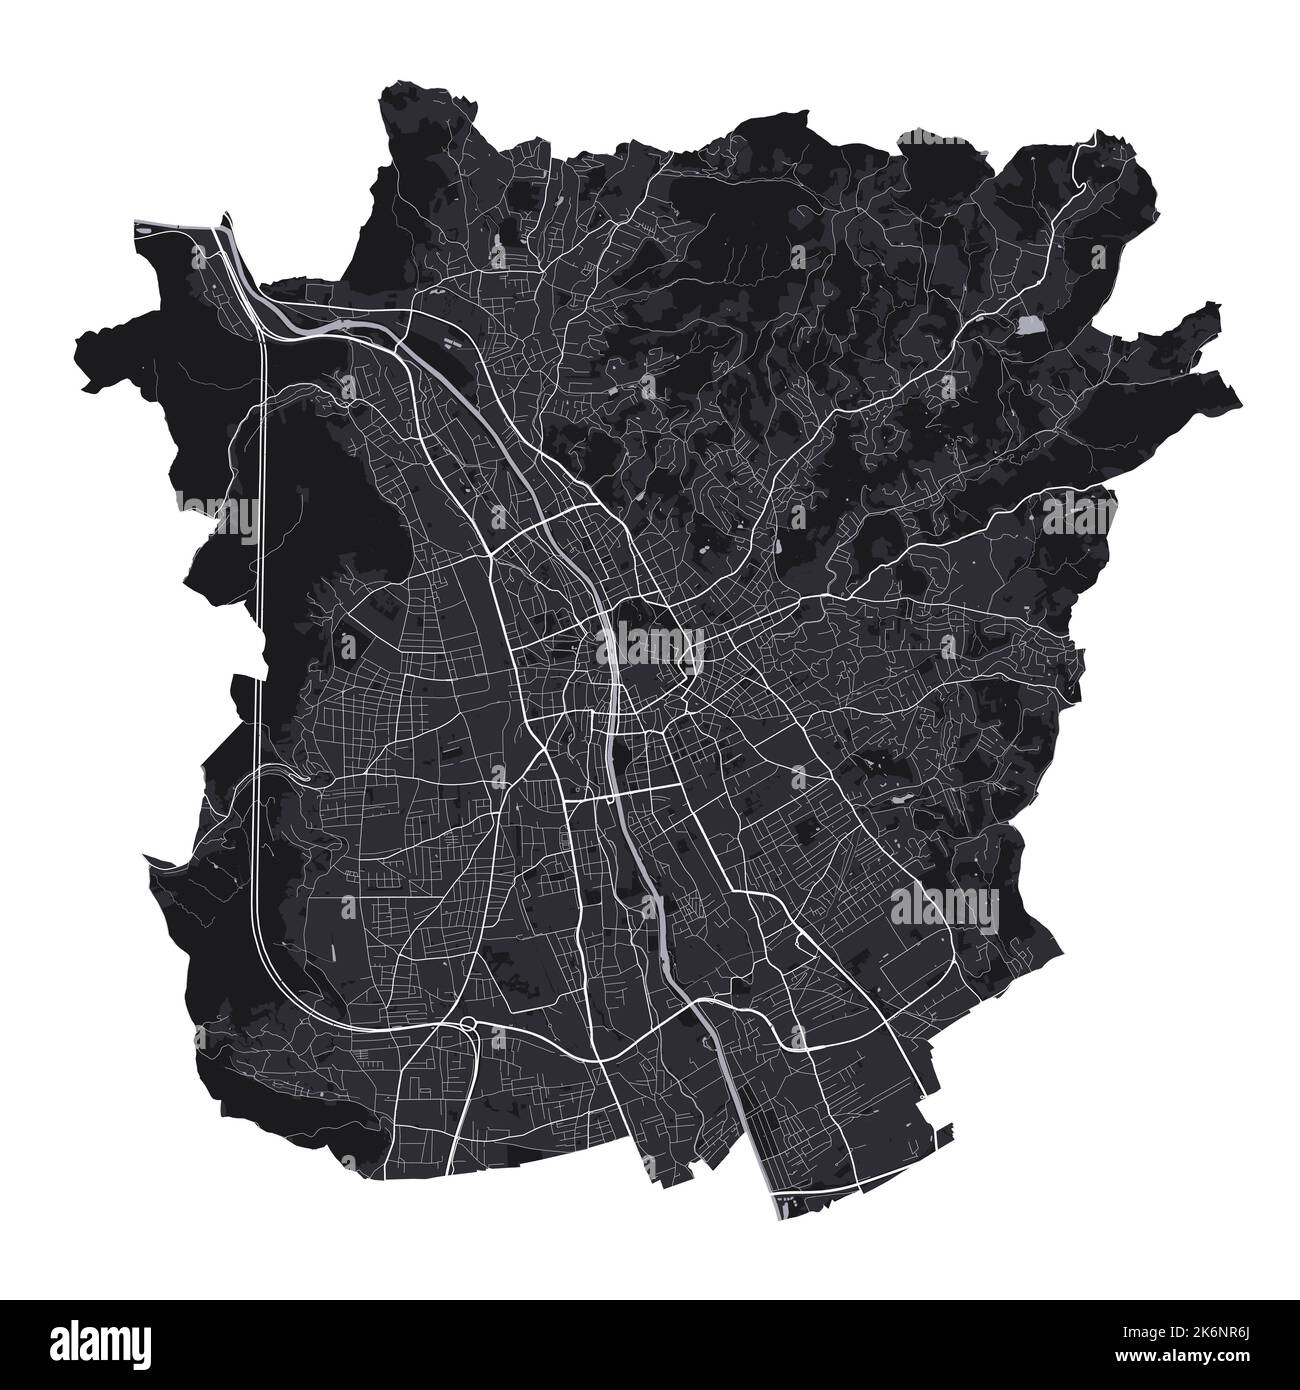 Mappa vettoriale Graz. Mappa vettoriale dettagliata dell'area amministrativa della città di Graz. Poster sulla città con vista metropolitana sull'aria. Terra nera con strade bianche e viale Illustrazione Vettoriale